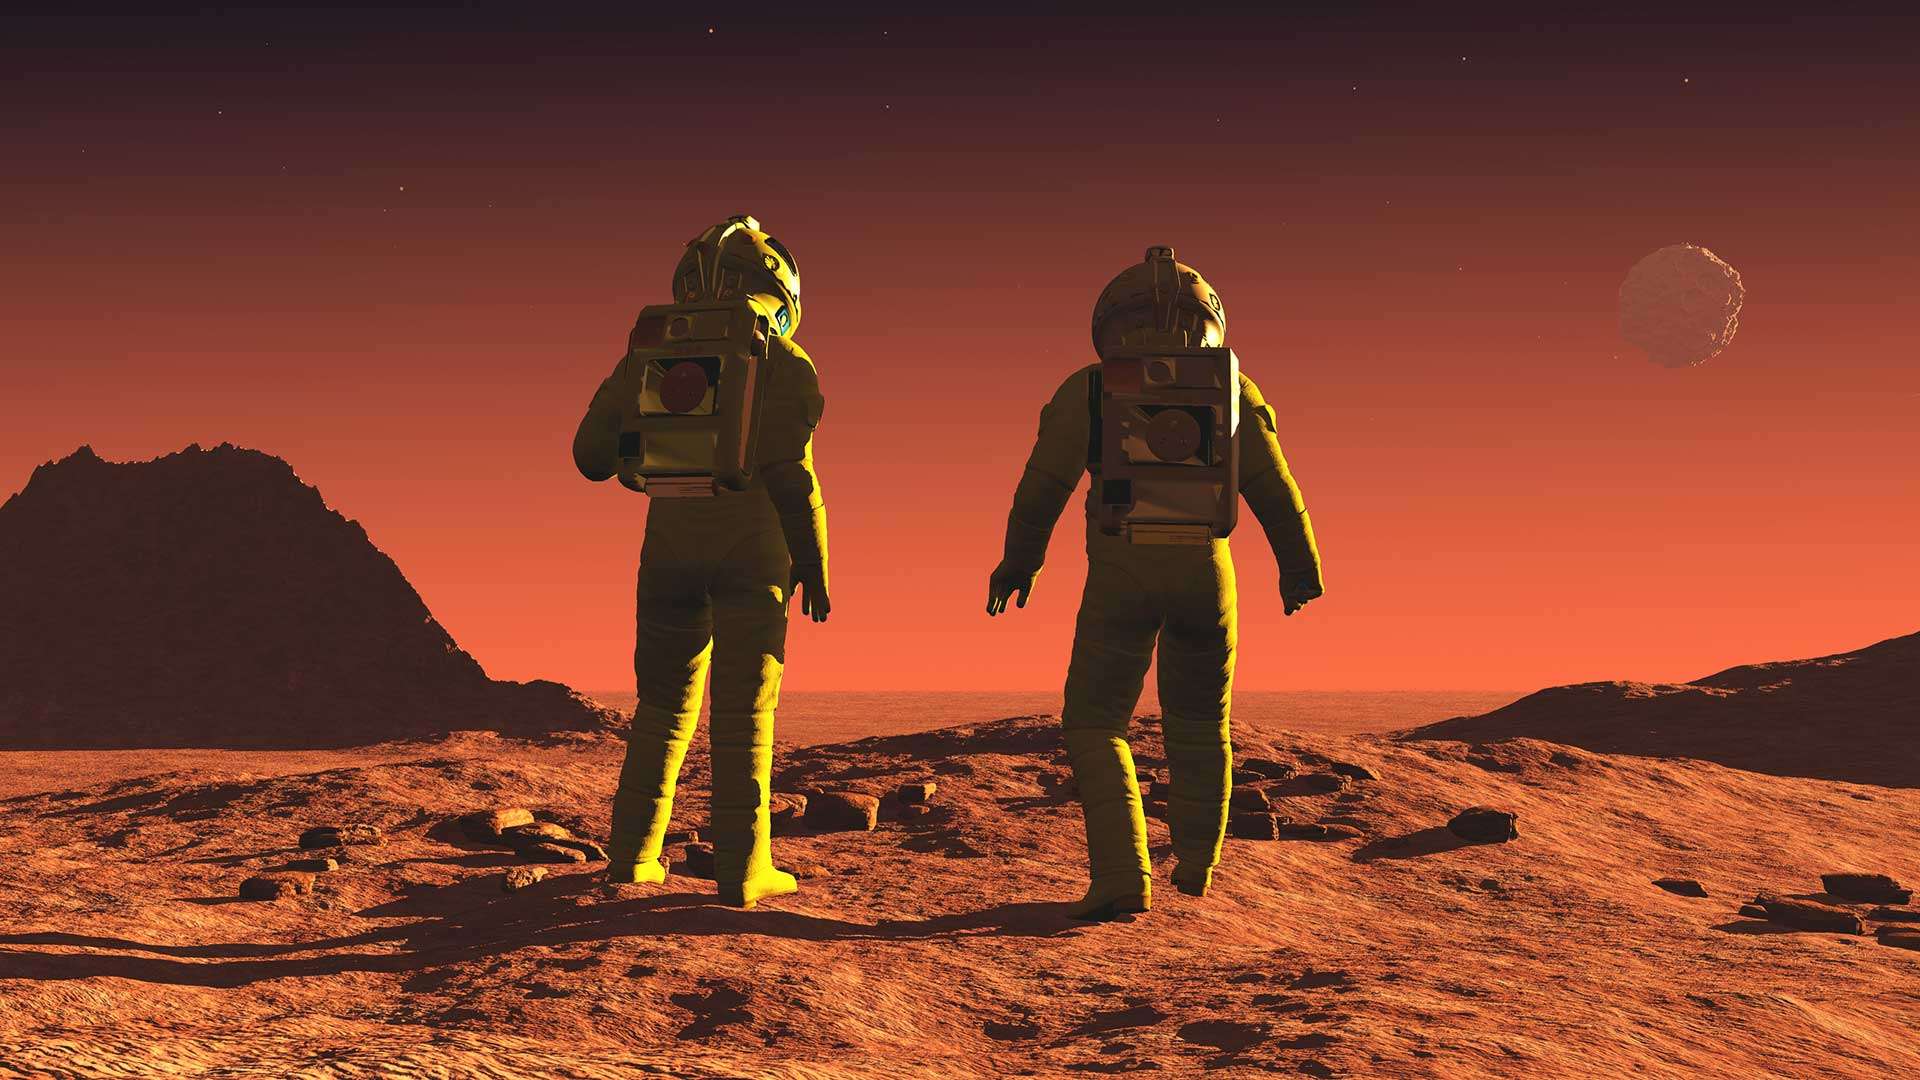 Τρεις αποστολές πατούν ταυτόχρονα στον Άρη